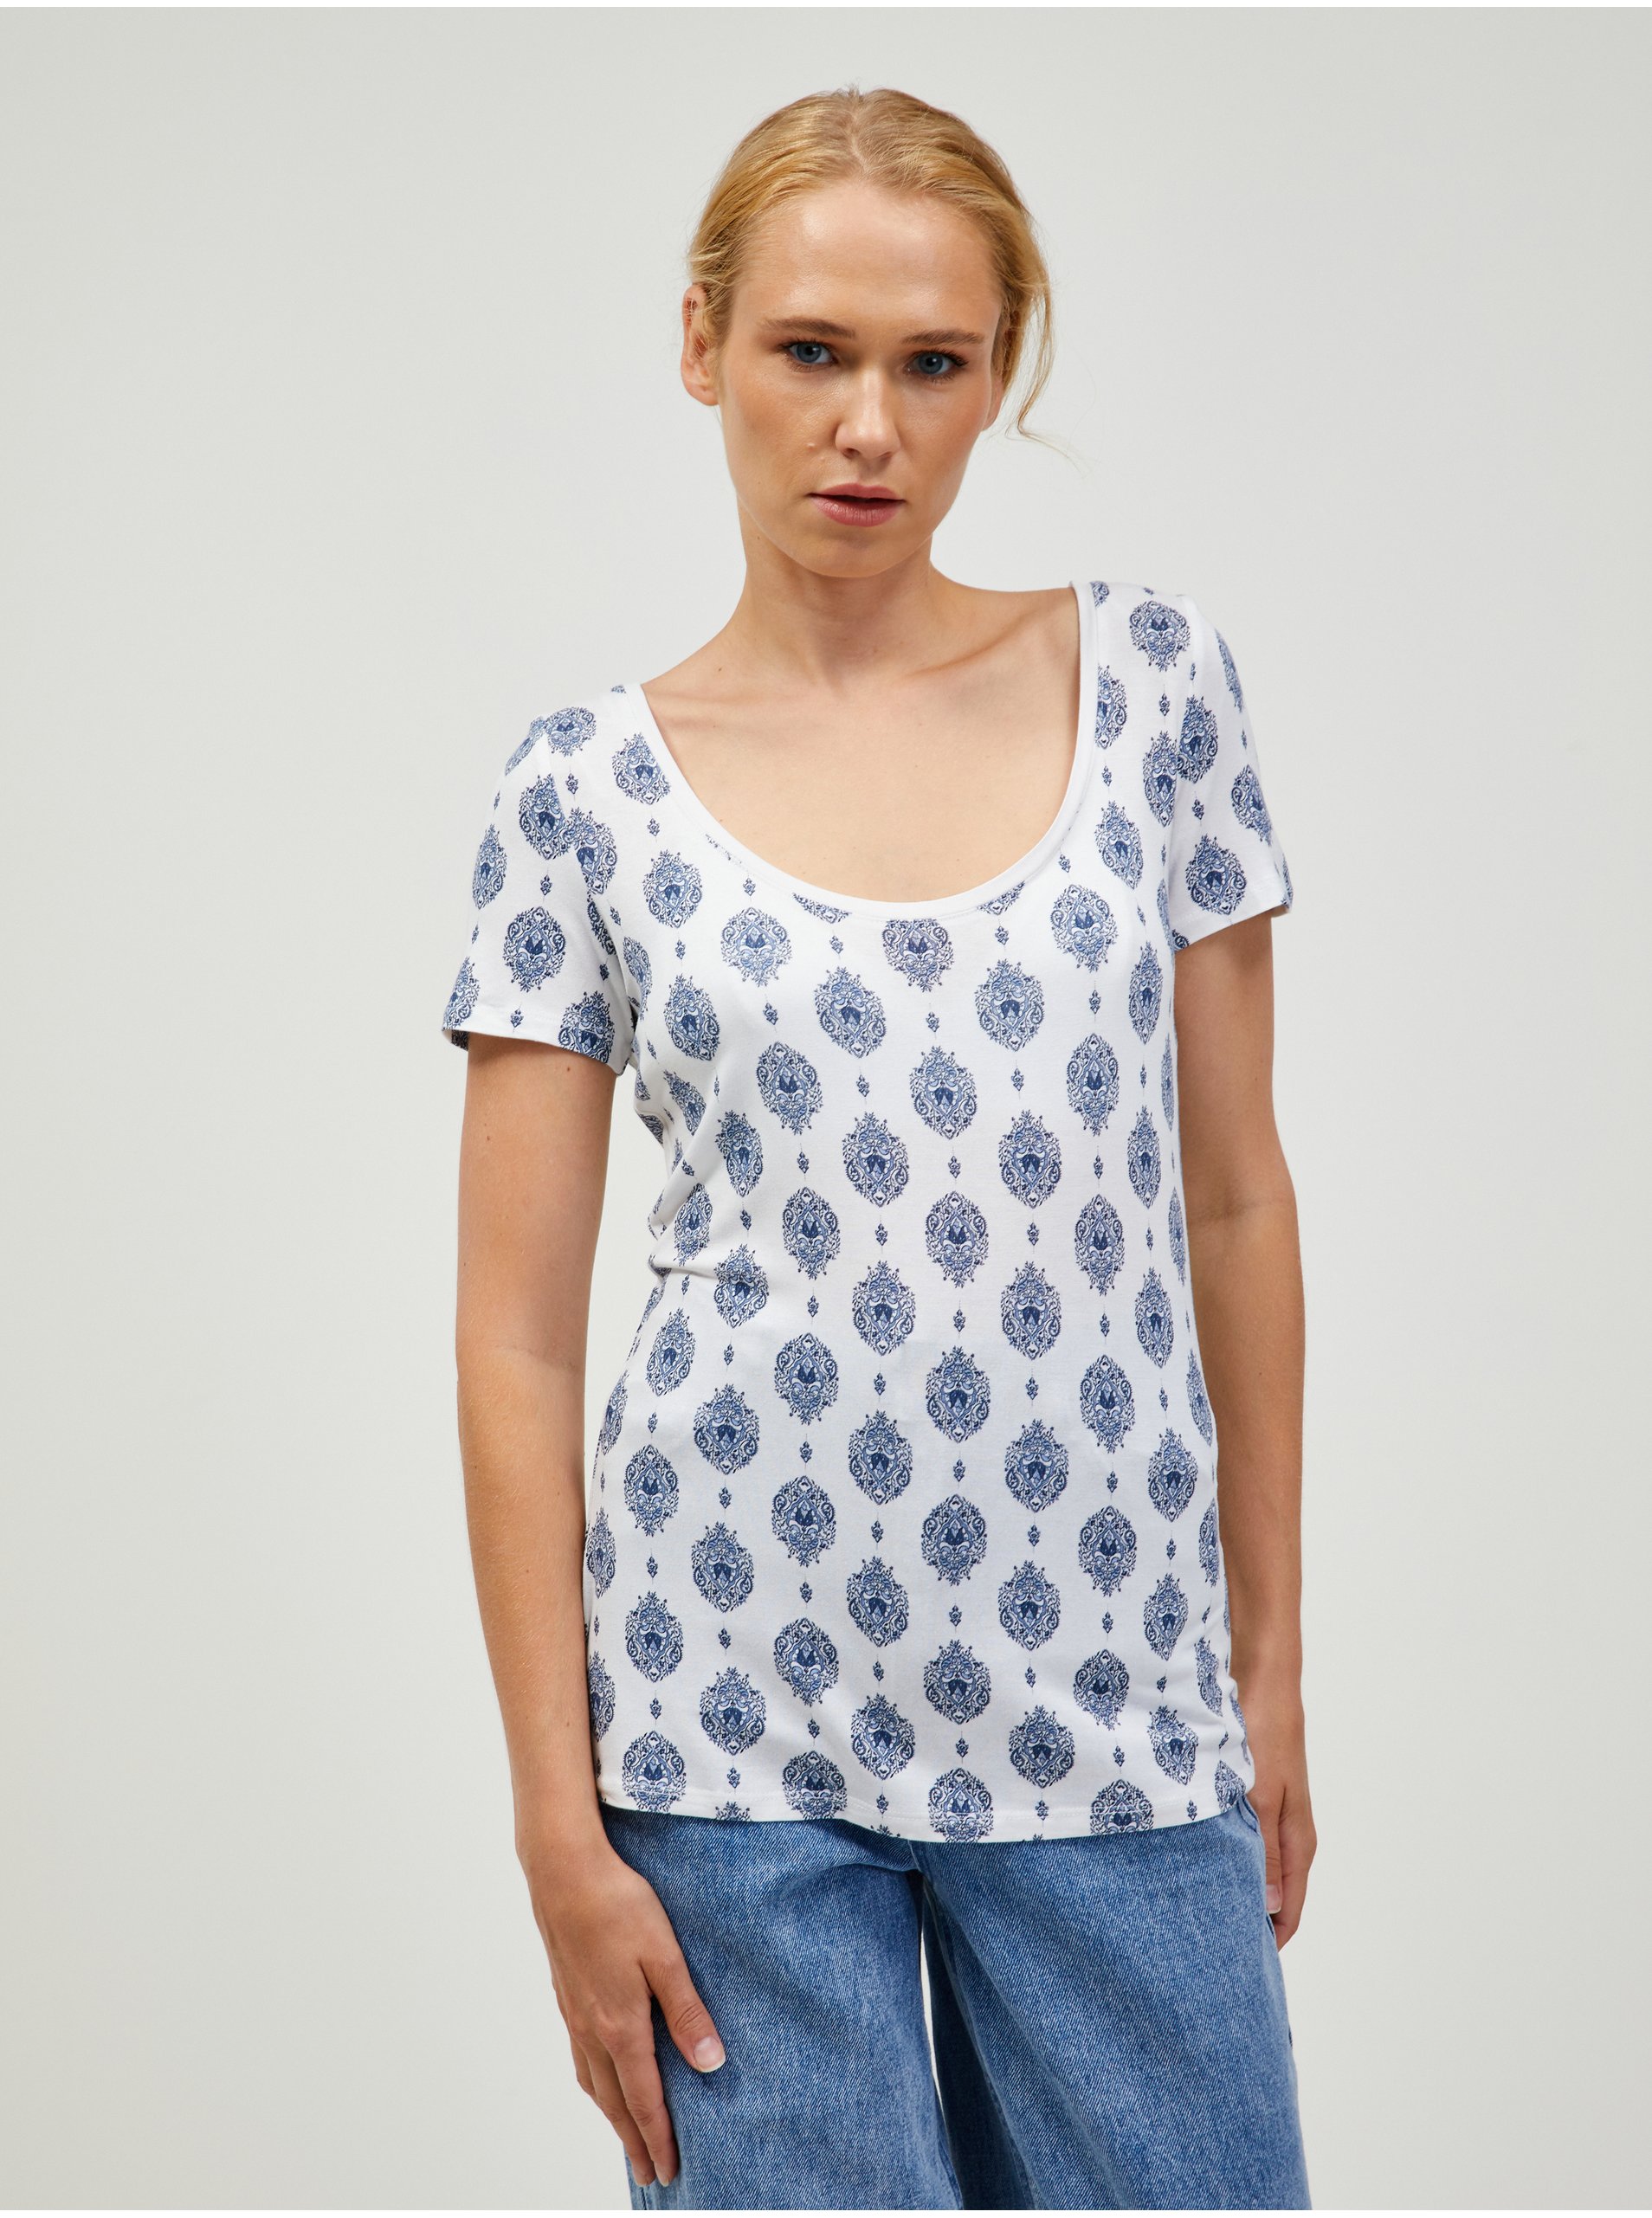 Lacno Modro-biele vzorované tričko ORSAY